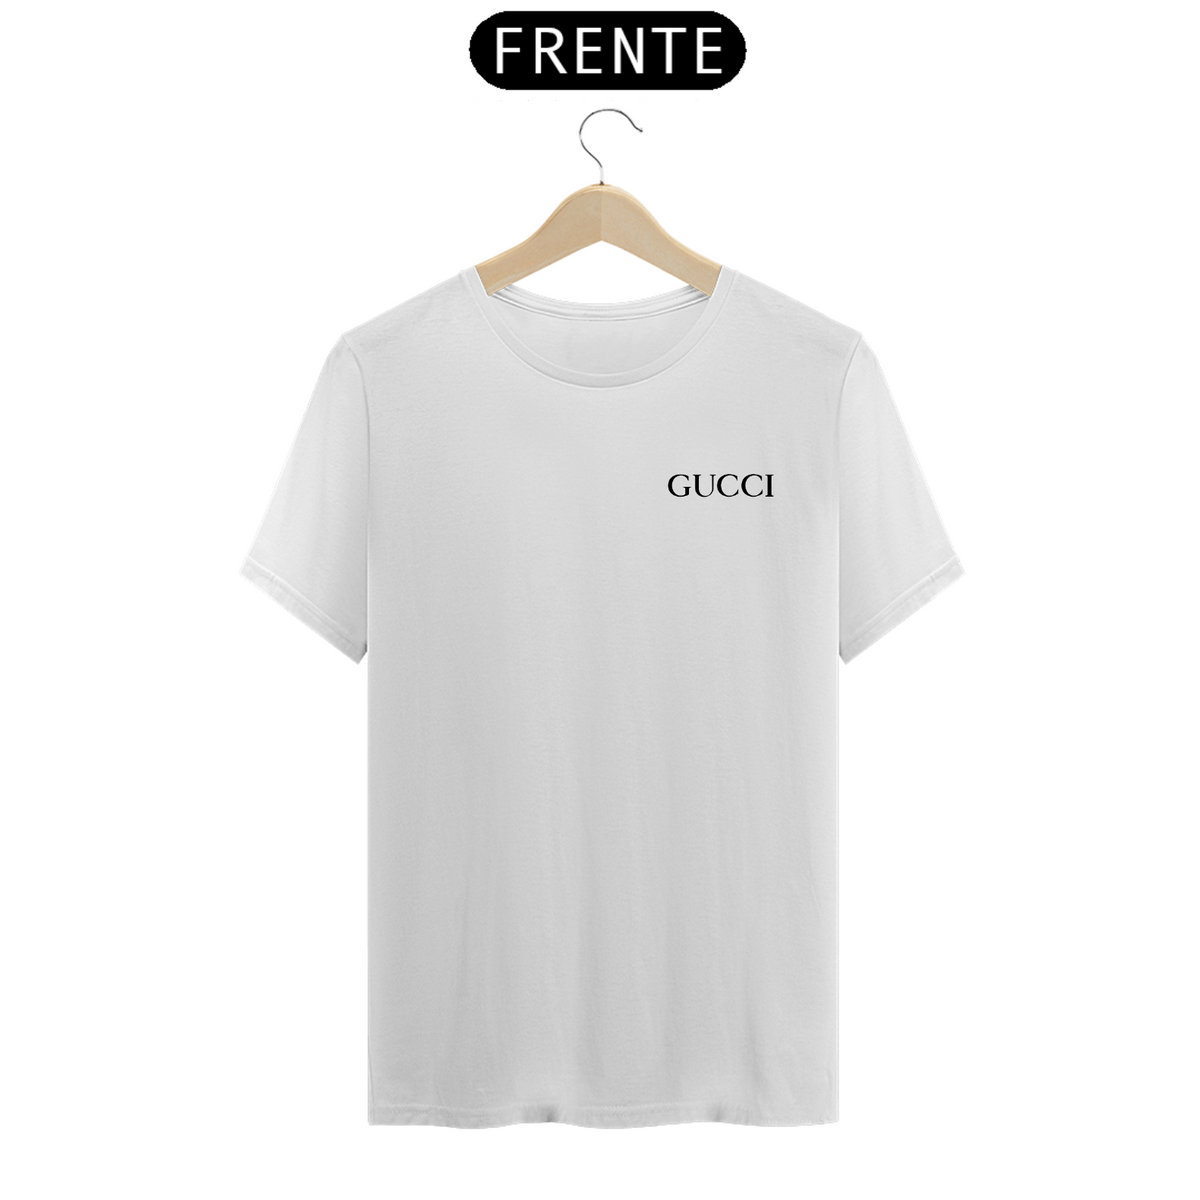 Nome do produto: Camisa Gucci Branca